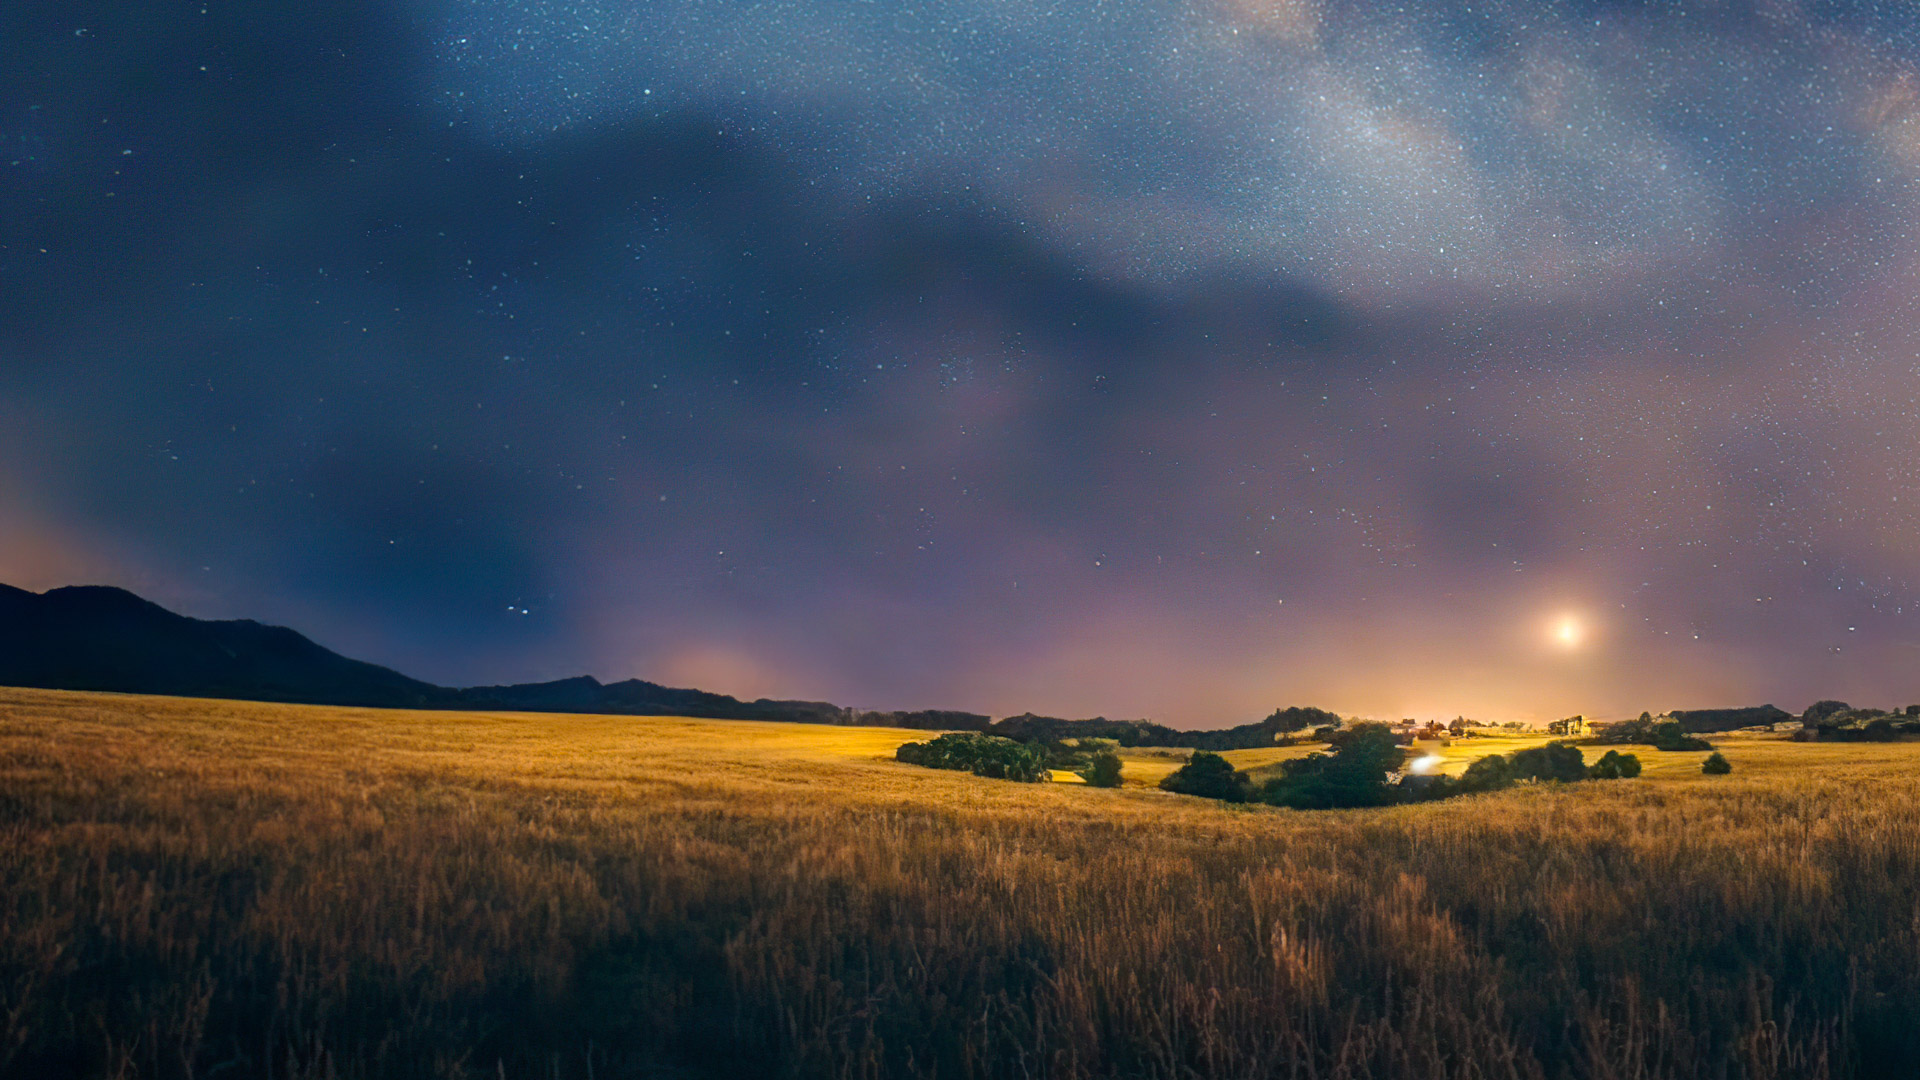 Téléchargez des fonds d'écran d'arrière-plan de nature en HD 1080p, illustrant un ciel nocturne clair et étoilé à la campagne, avec la Voie lactée s'étirant à l'horizon.